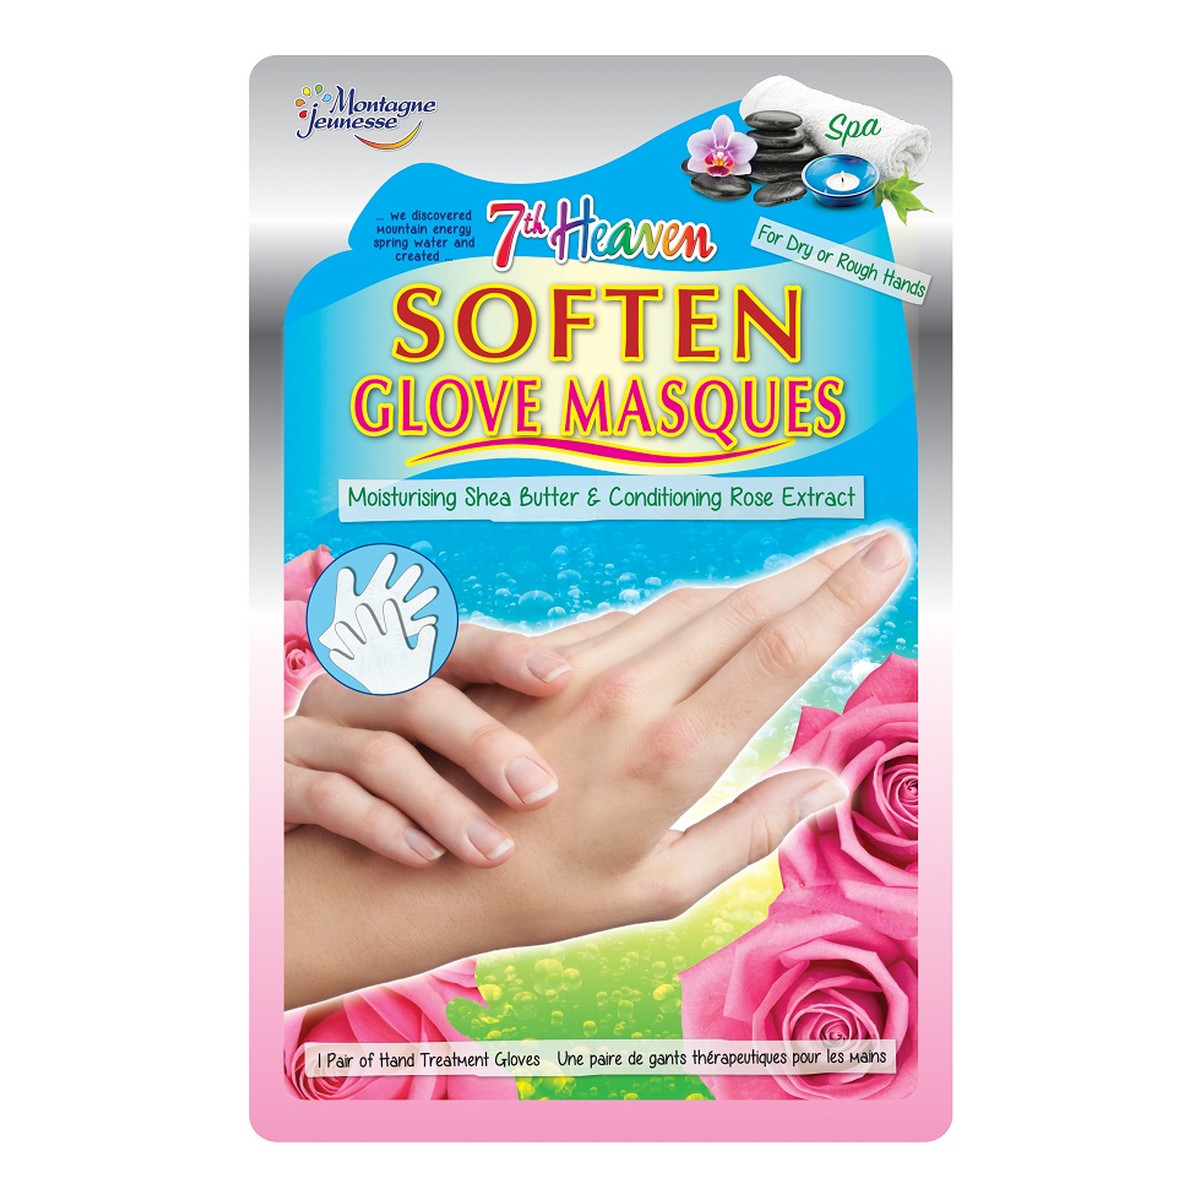 7th Heaven Soften Glove Masques Nawilżające rękawiczki do dłoni Shea Butter